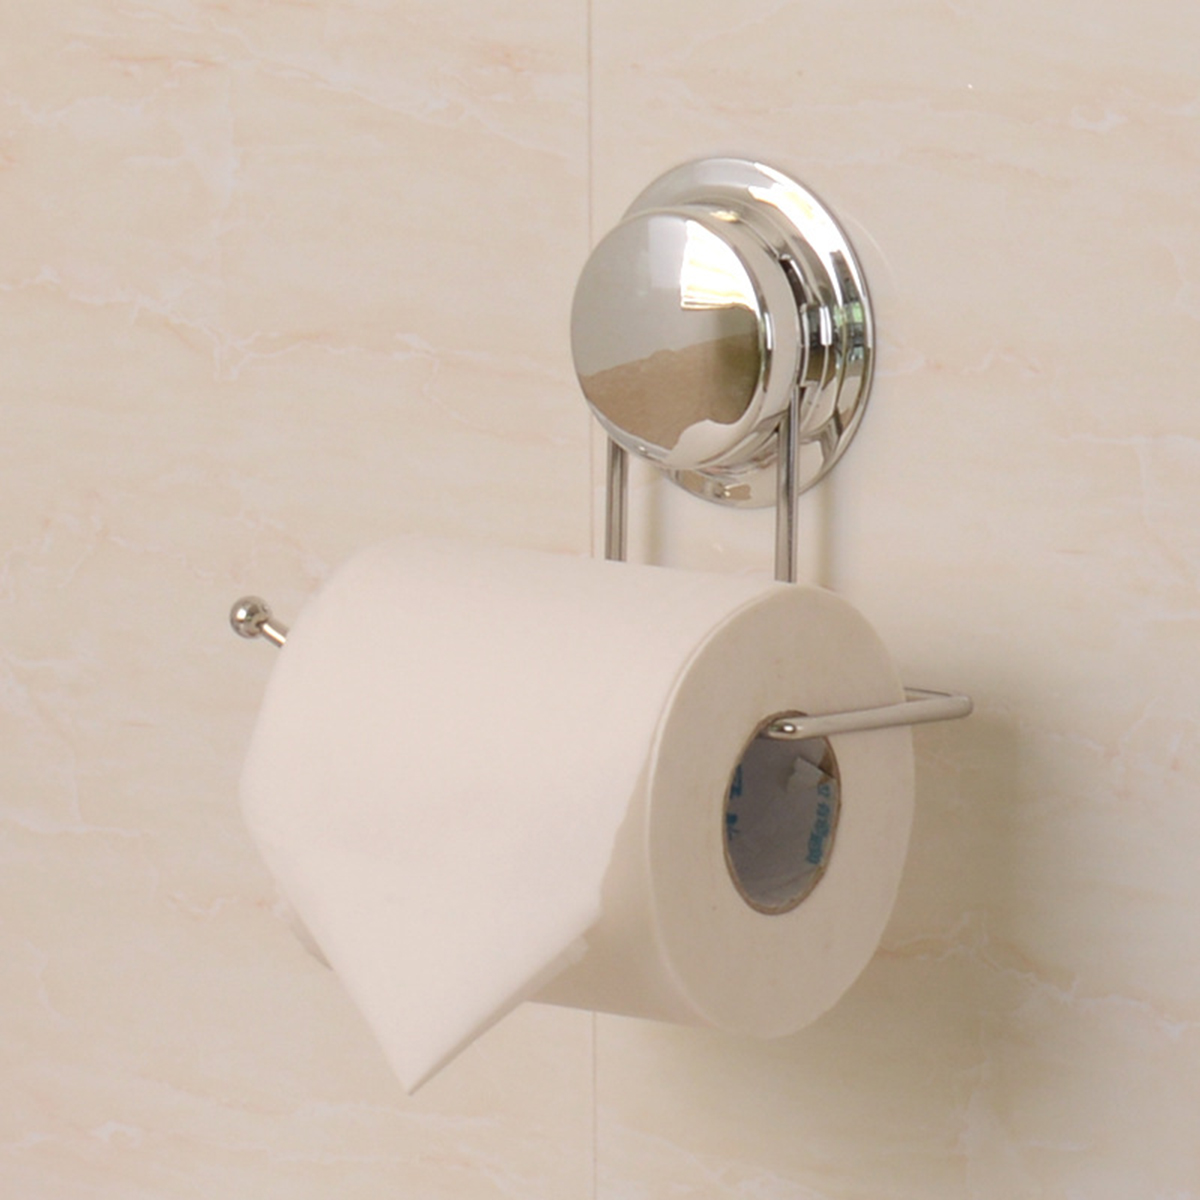 

Держатель для туалетной бумаги на присоске Вешалка Ванная комната Кухонная салфетка Полотенце Стойка Крюк